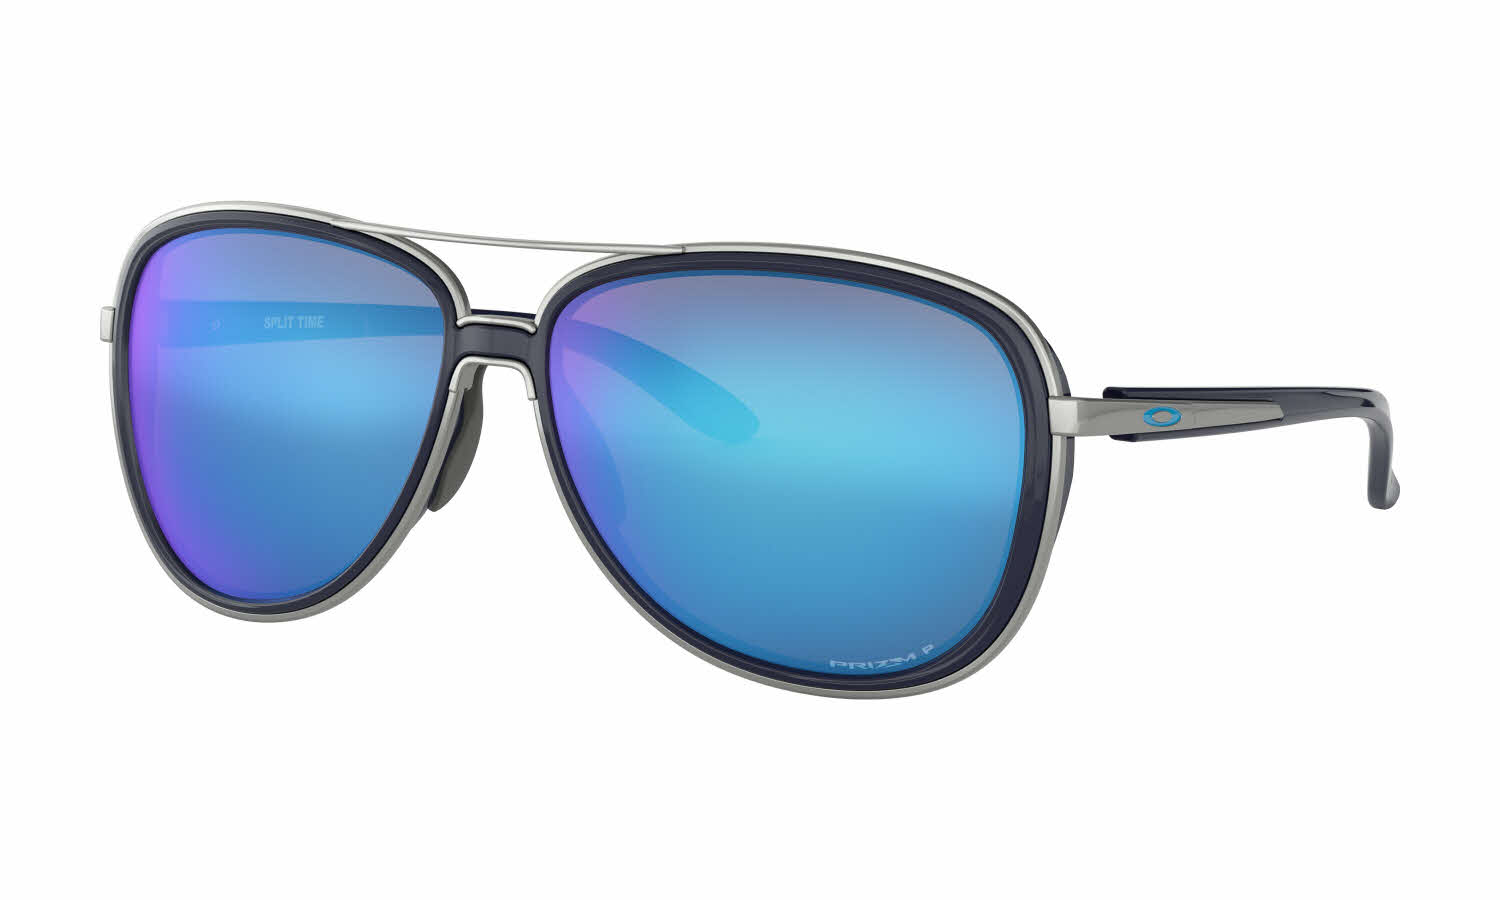 Oakley Split Time Sunglasses | Free 